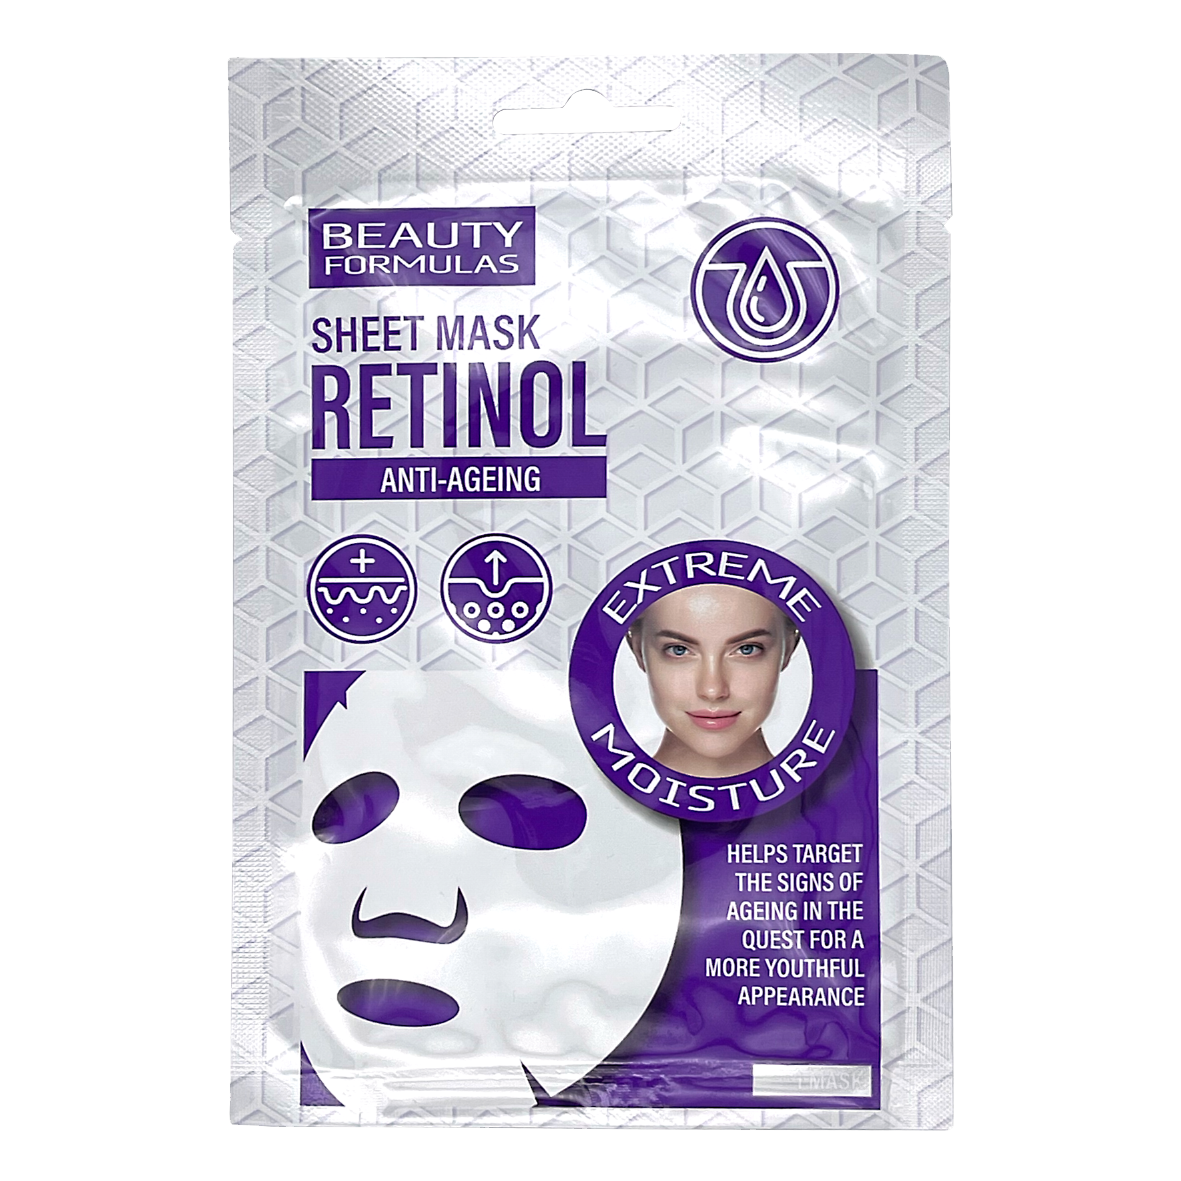 Retinol anti ageing facial sheet mask.